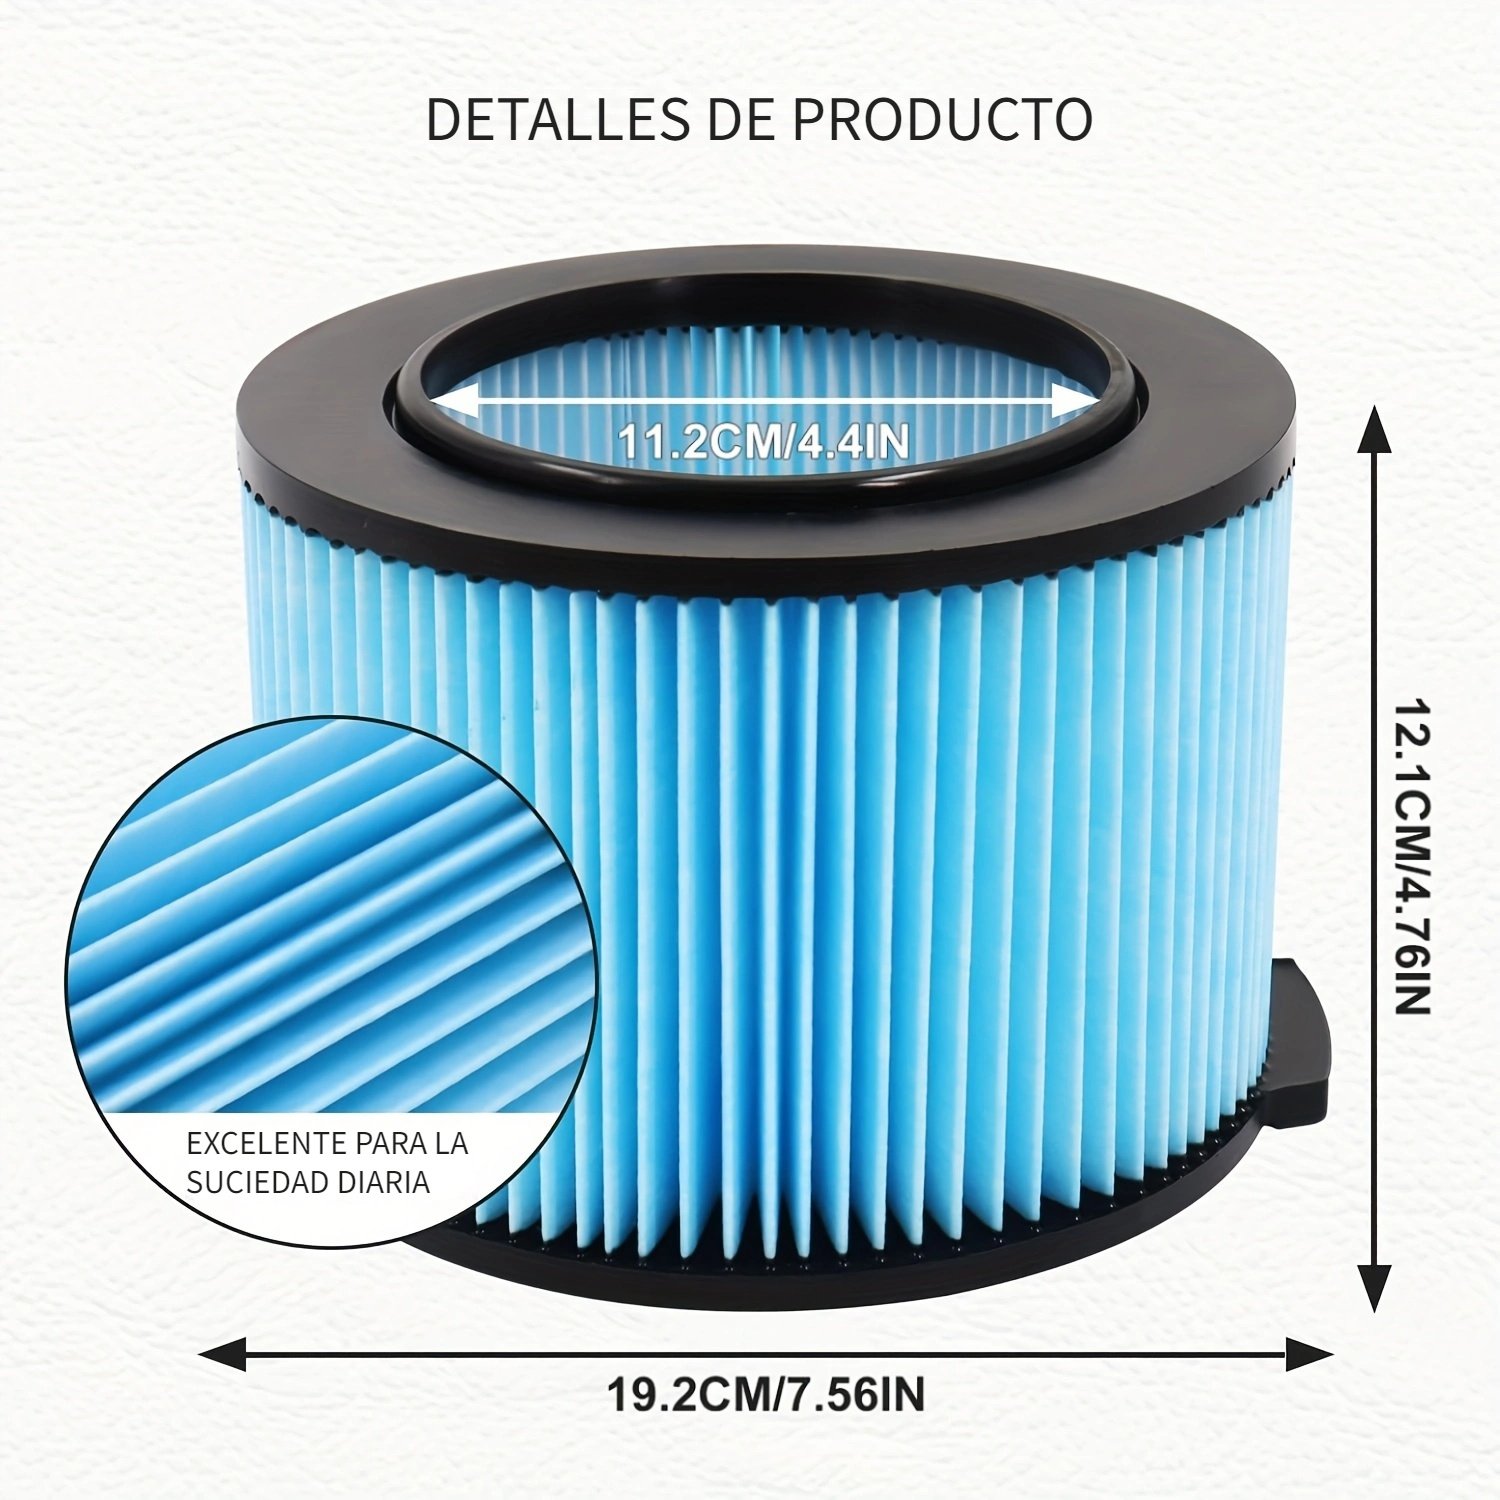 Paquete de 2 filtros estándar para aspiradora húmeda/seca Vf4000  compatibles con aspiradoras RIDGID de 5 a 20 galones, filtro de repuesto  Vf4000